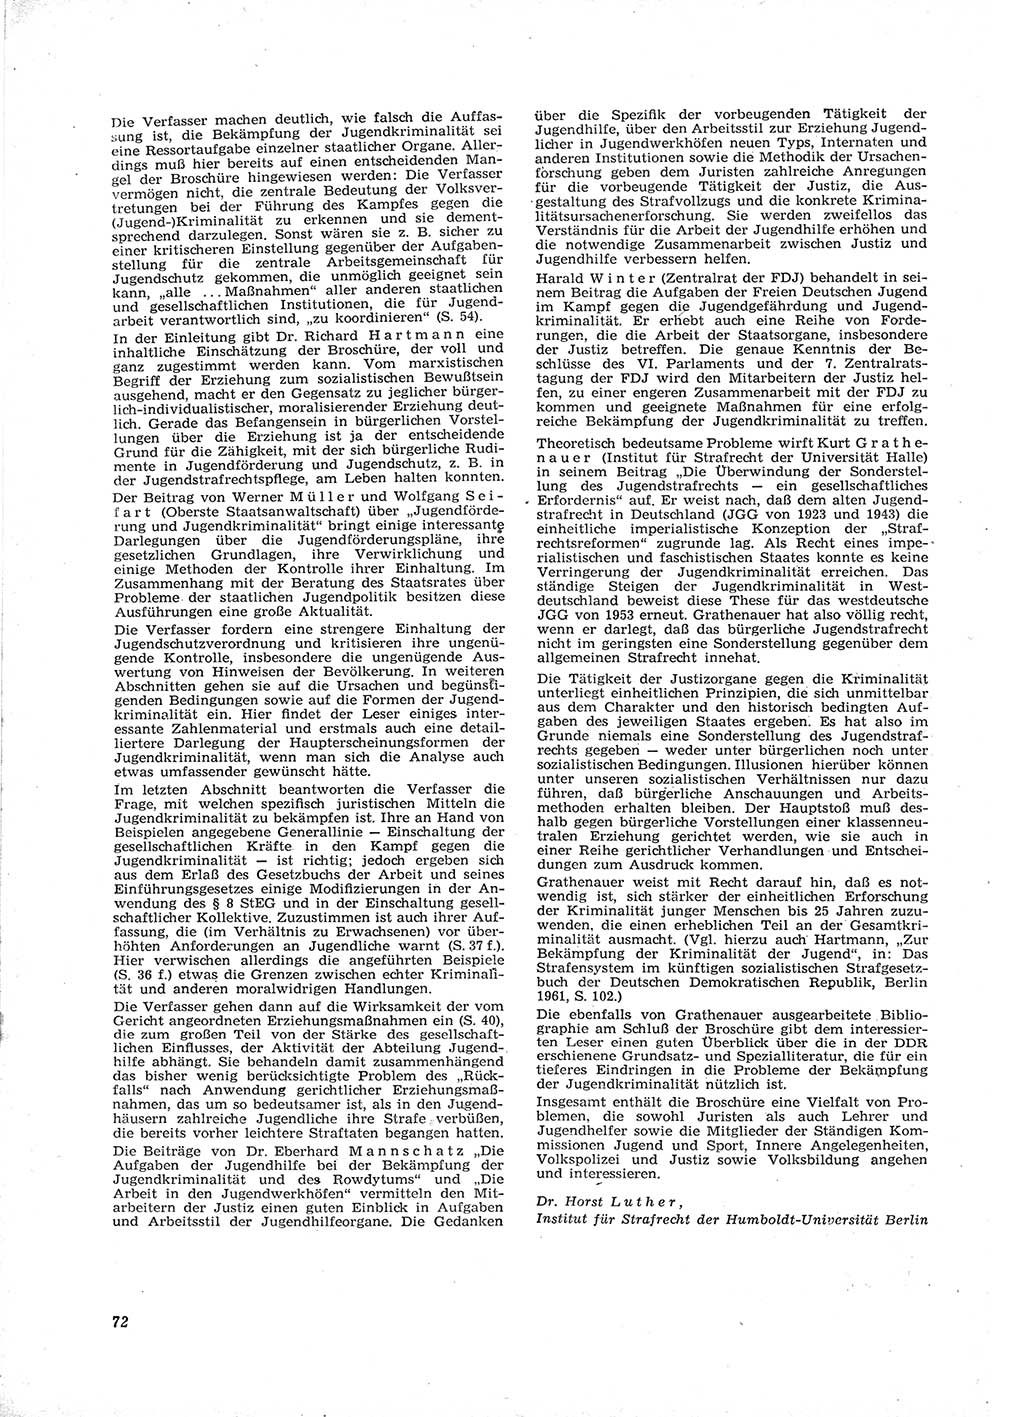 Neue Justiz (NJ), Zeitschrift für Recht und Rechtswissenschaft [Deutsche Demokratische Republik (DDR)], 16. Jahrgang 1962, Seite 72 (NJ DDR 1962, S. 72)